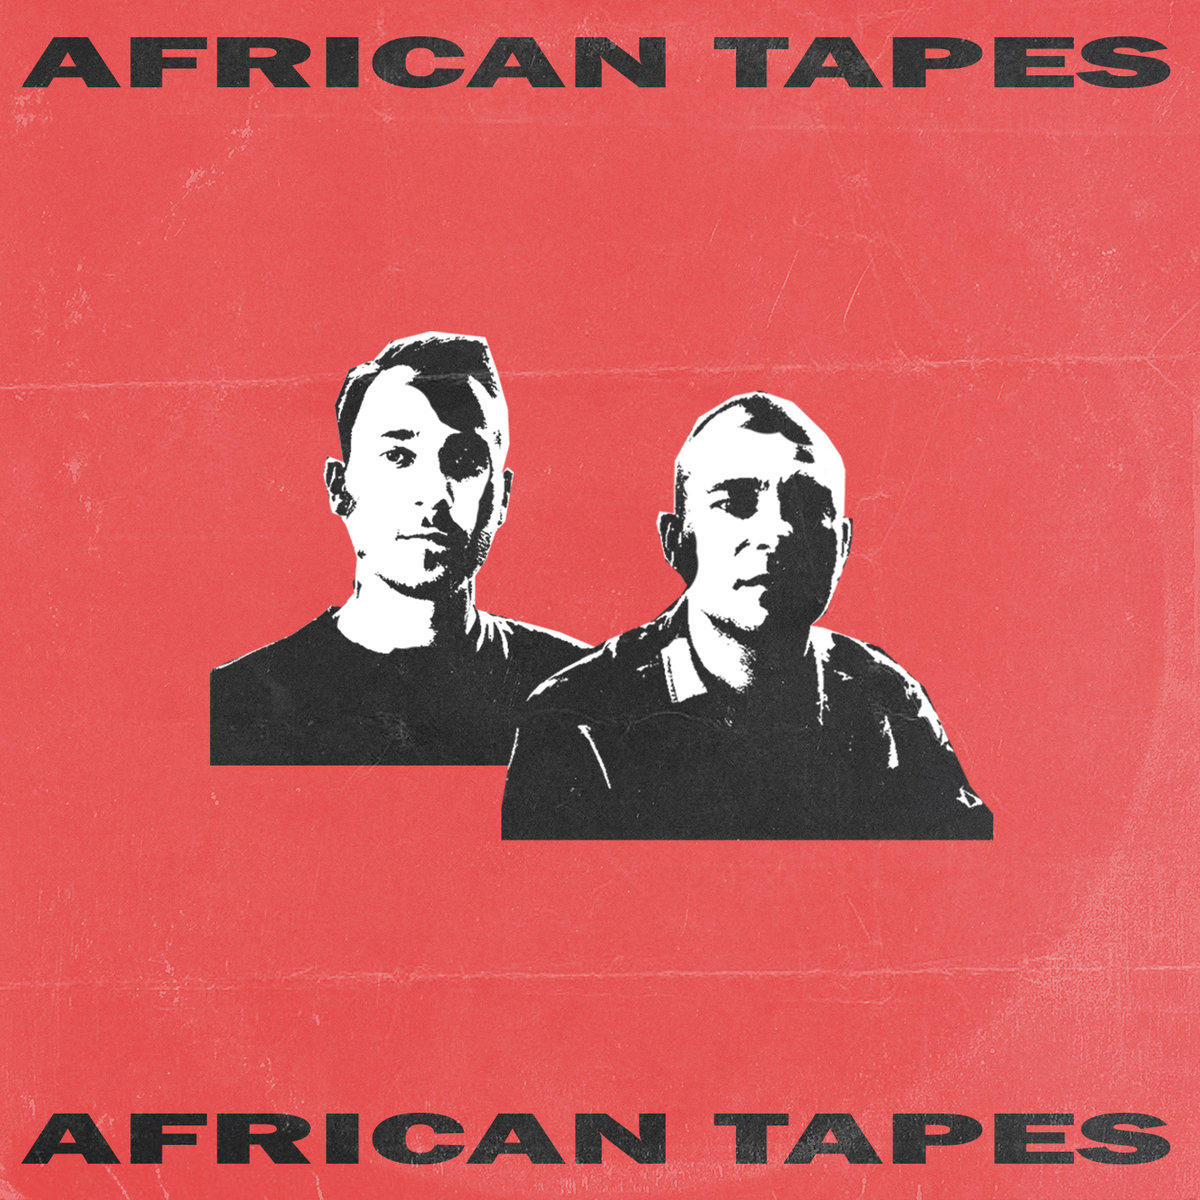 Dochód ze sprzedaży albumu "African Tapes" zostanie przekazany organizacji non-profit działającej w Gambii